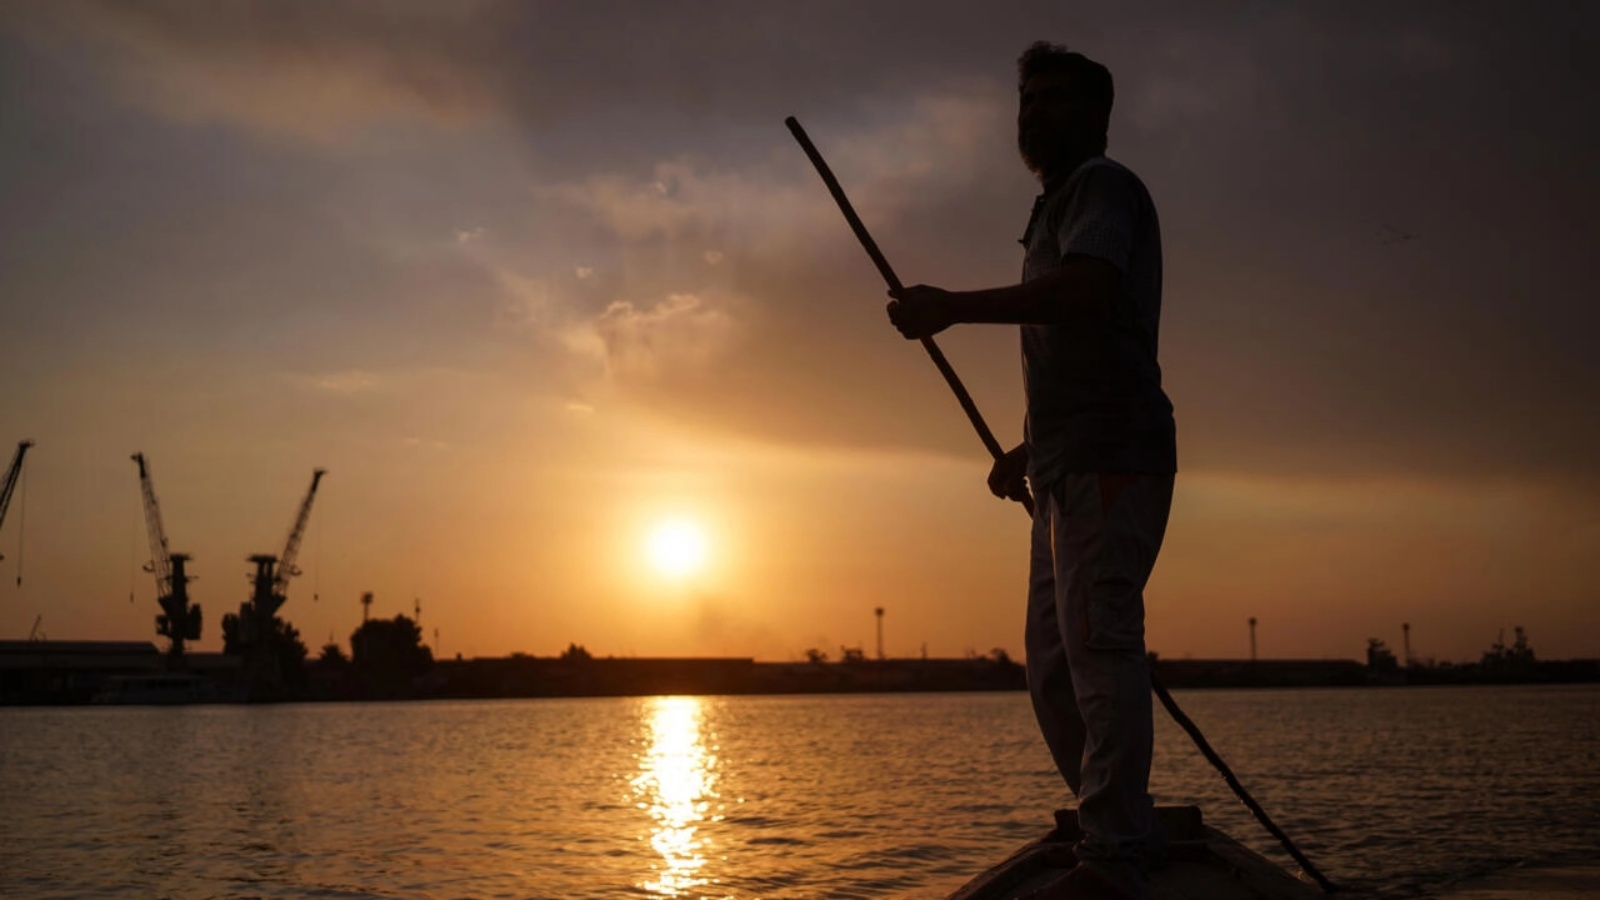 غروب الشمس على نهر دجلة: الصياد العراقي نعيم حداد يجوب شط العرب بالقرب من البصرة